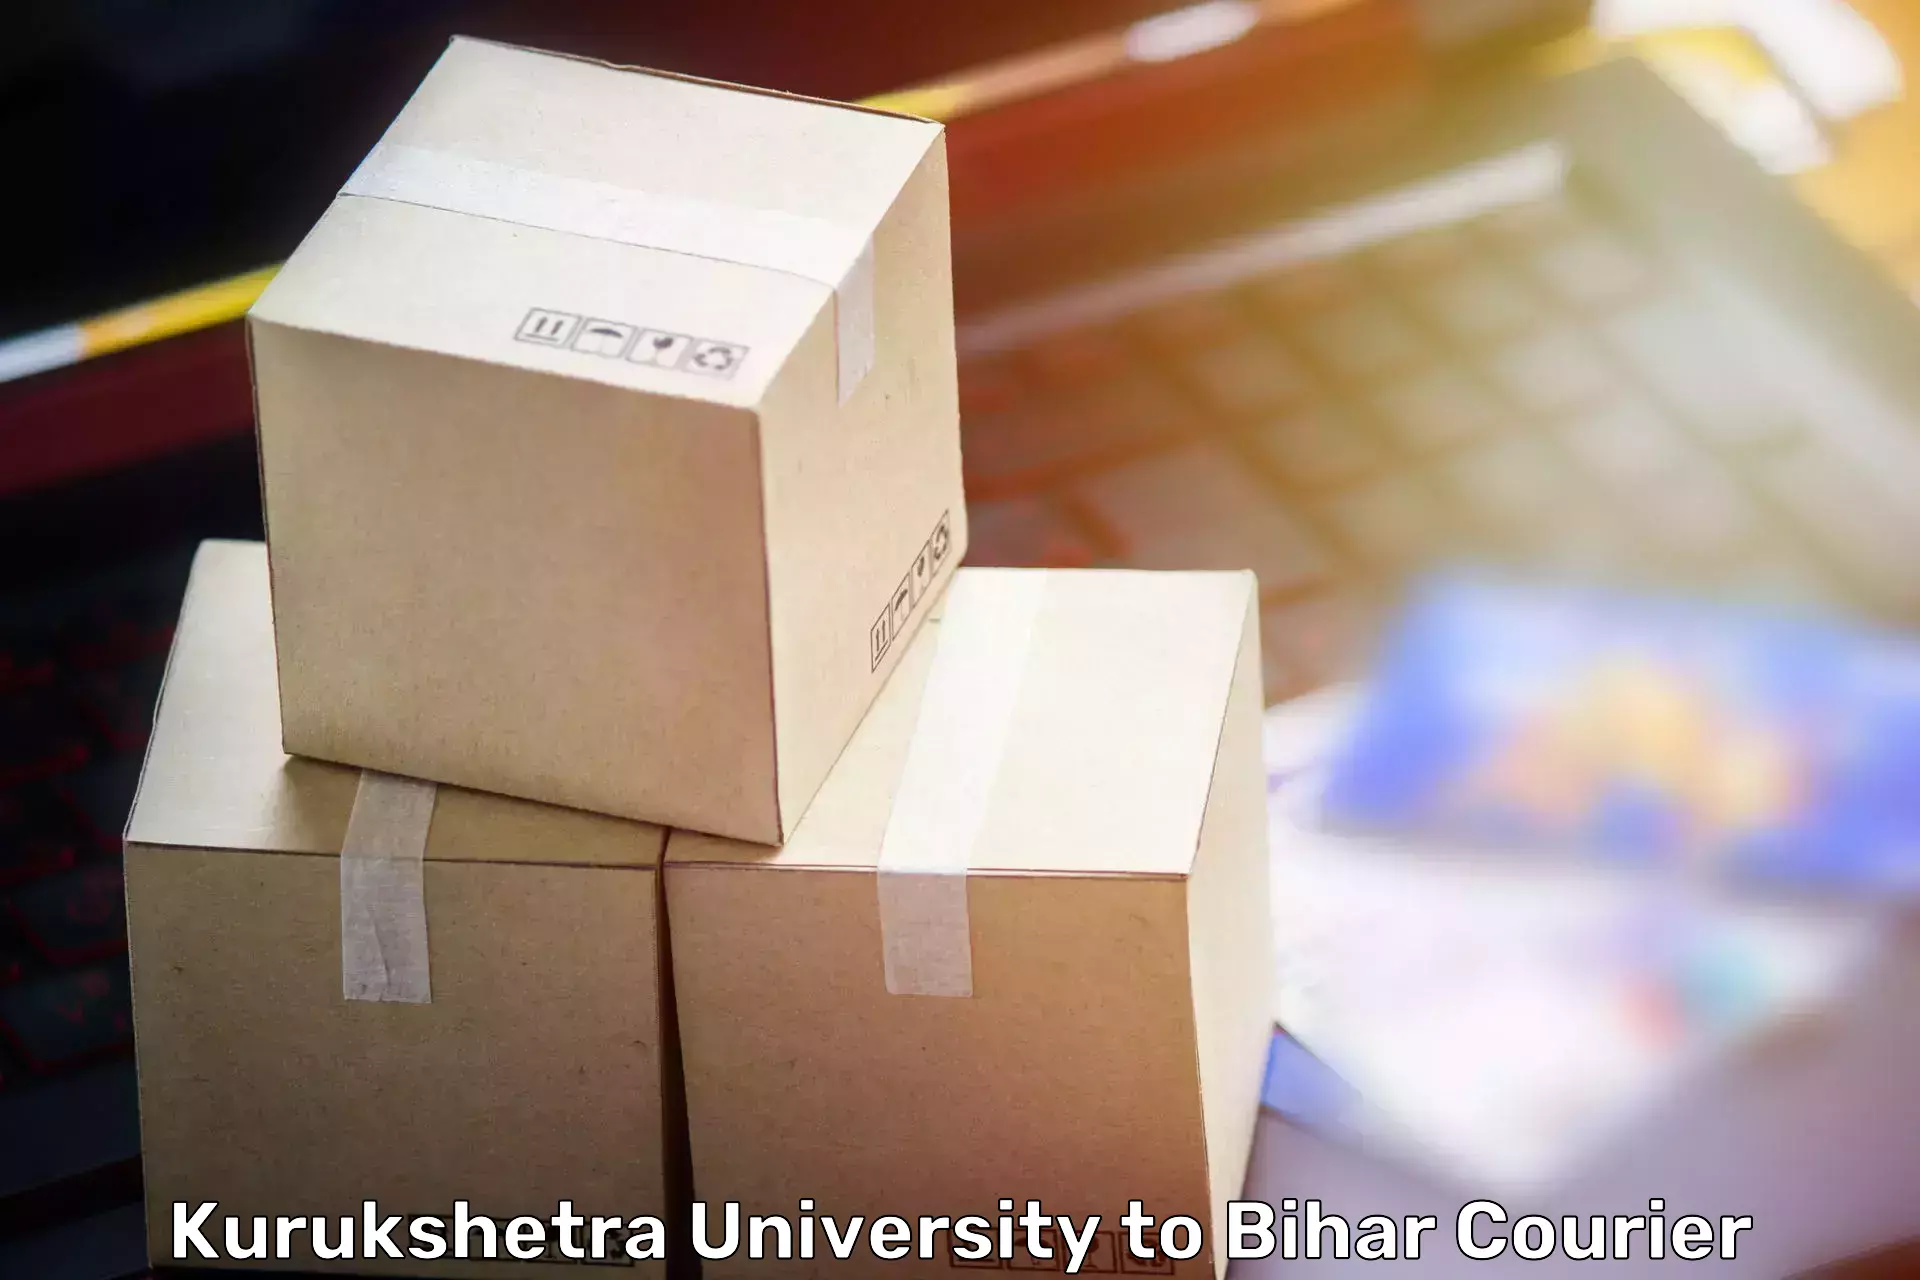 Full-service movers Kurukshetra University to Baniapur